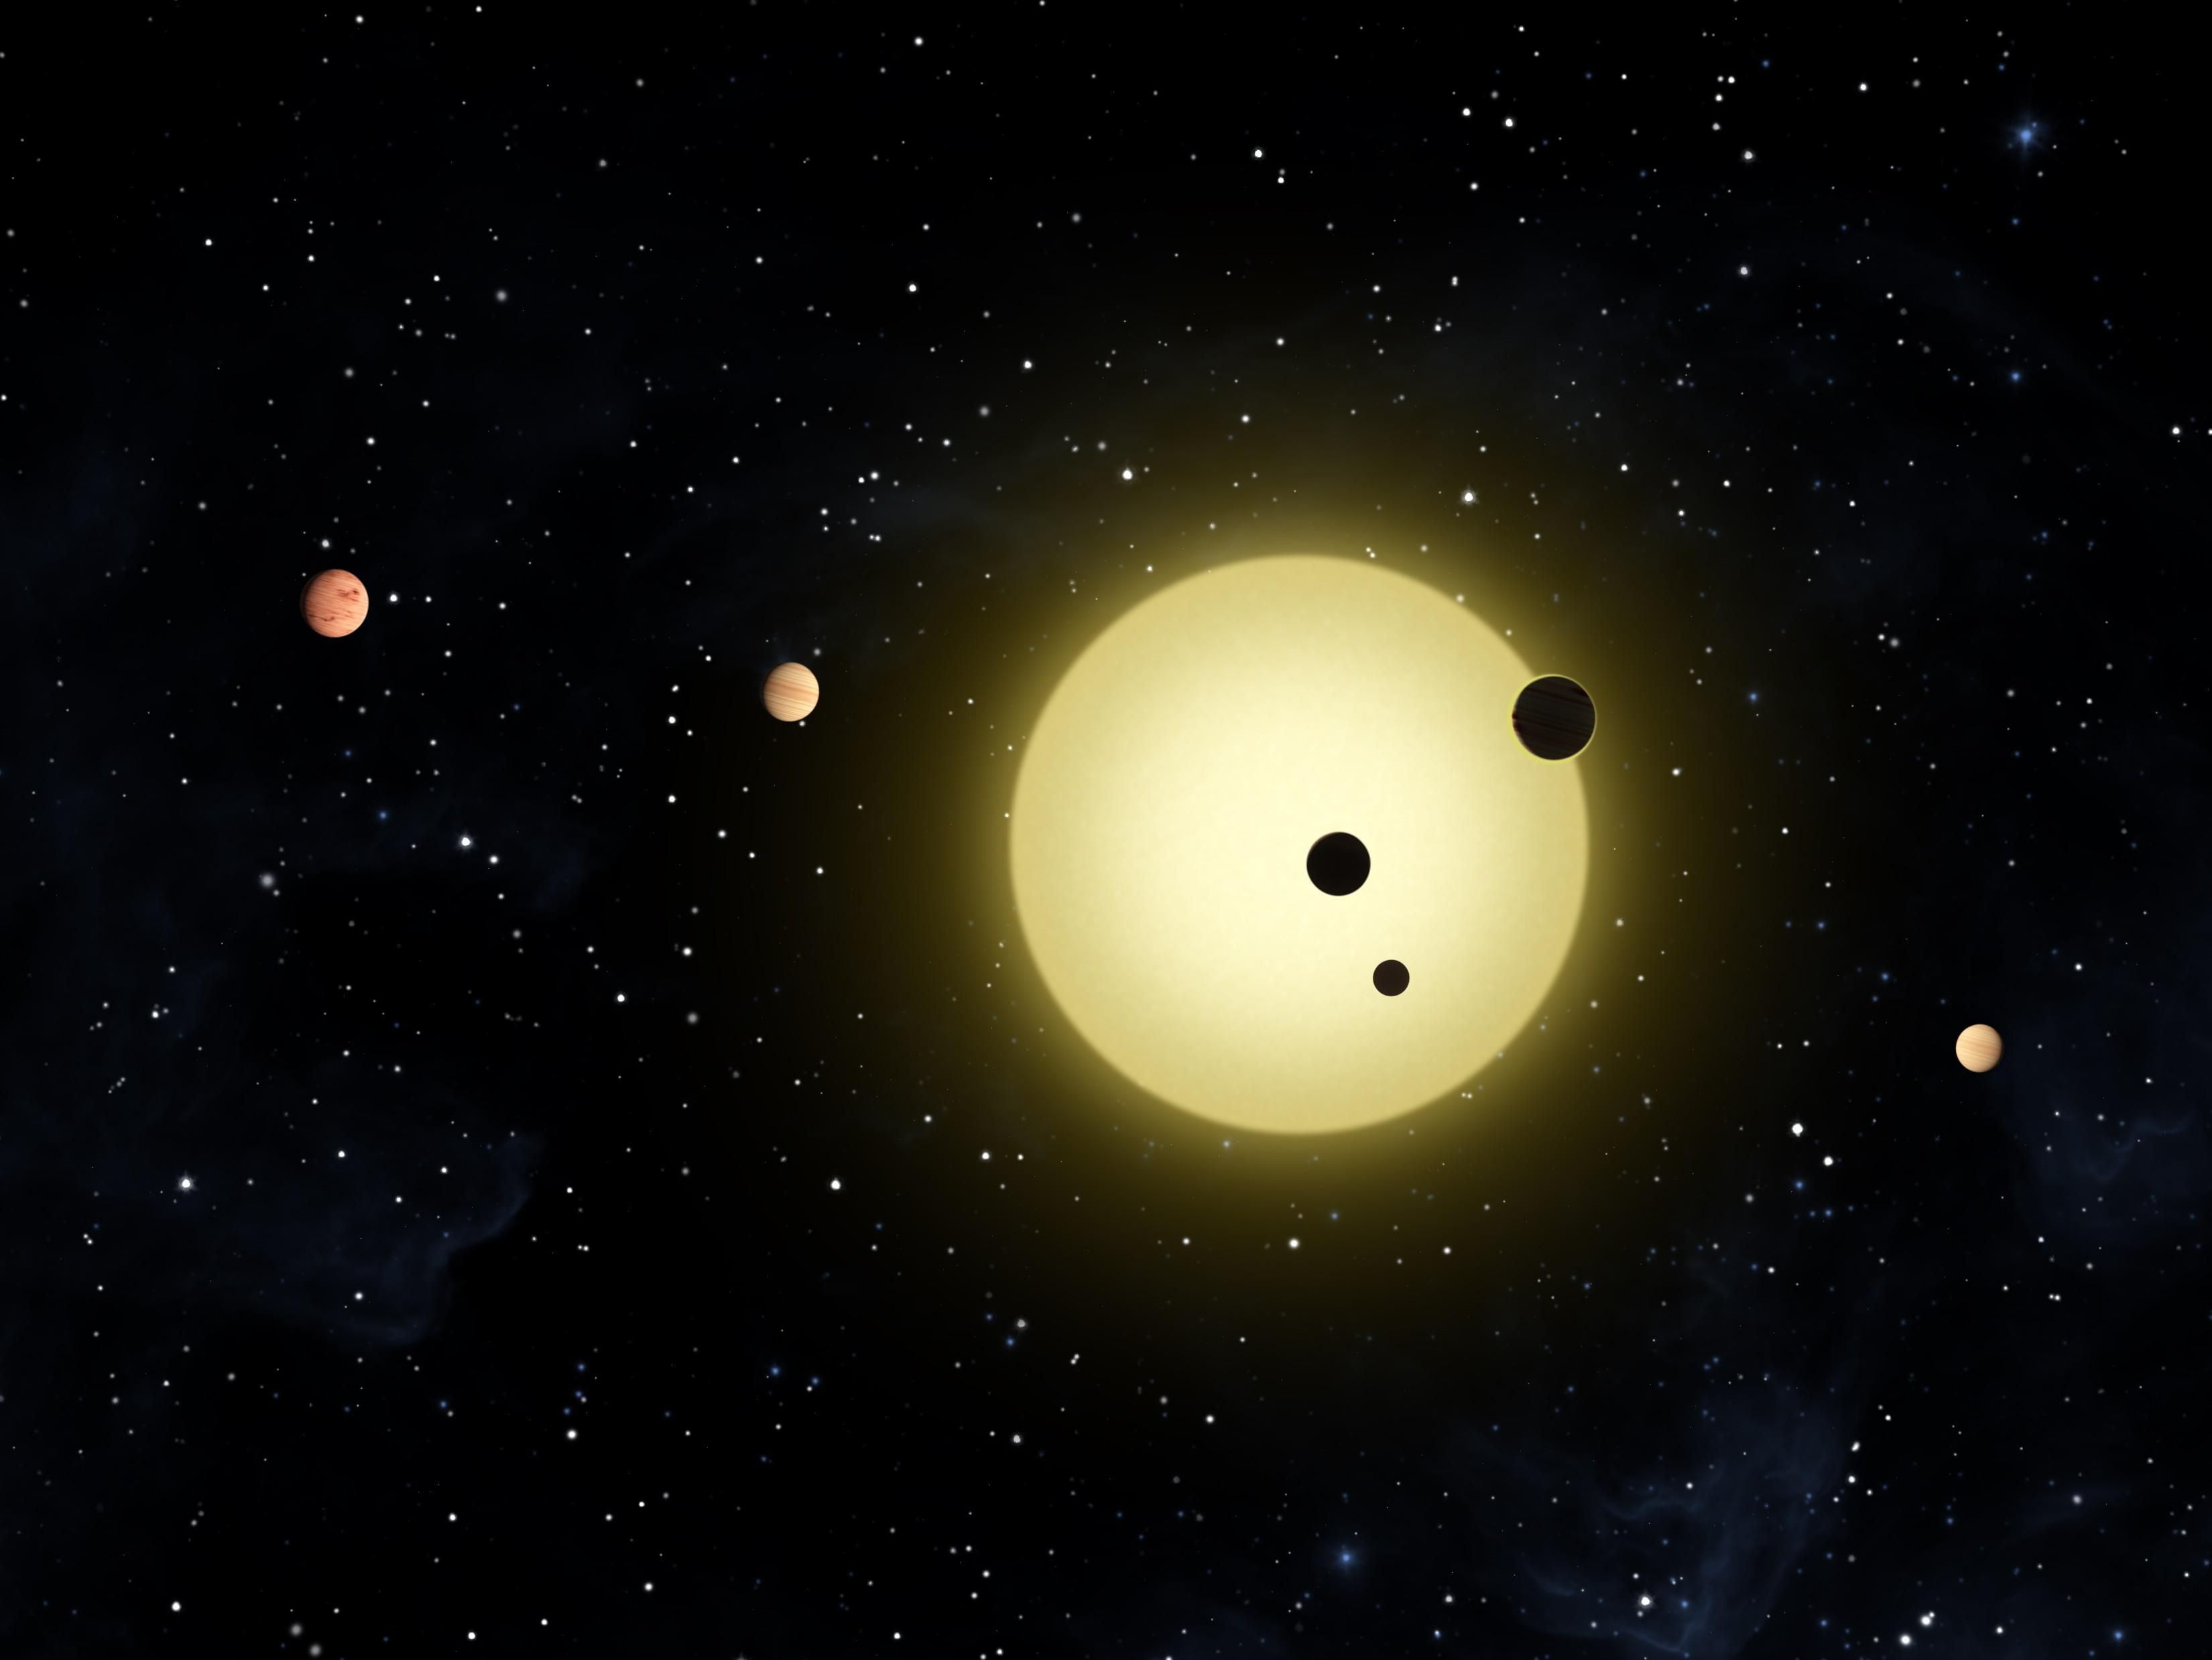 Ілюстративне фото планет навколо невідомої зорі